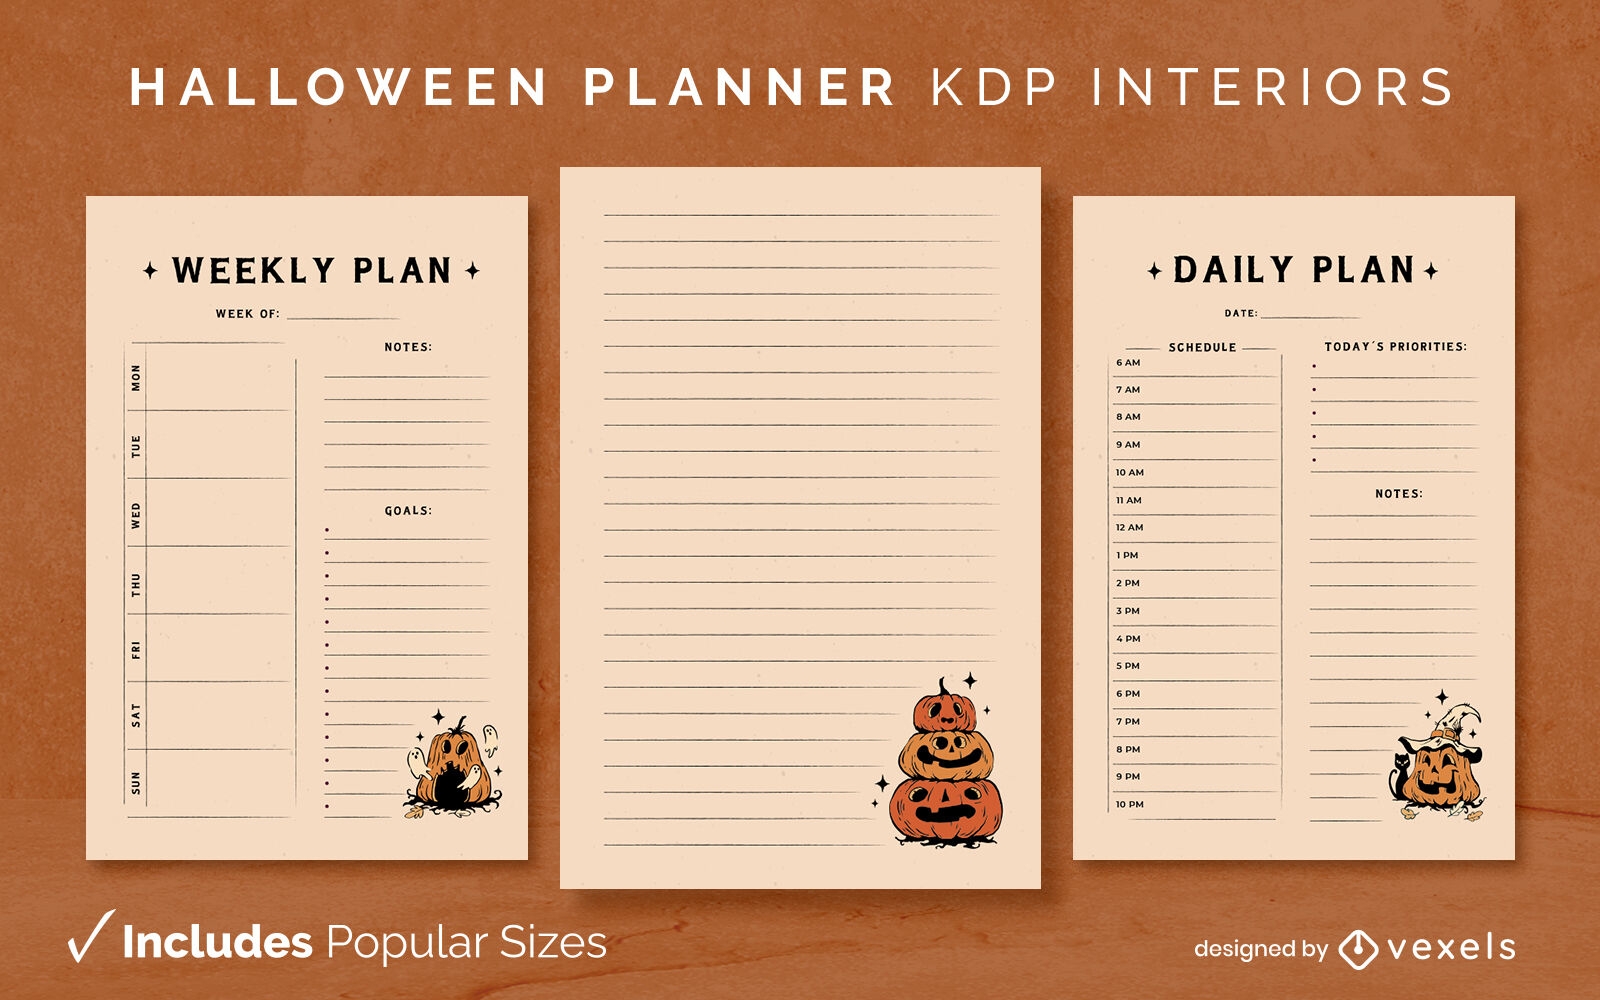 Plantilla de diario de calabazas de planificador de Halloween Dise?o de interiores KDP